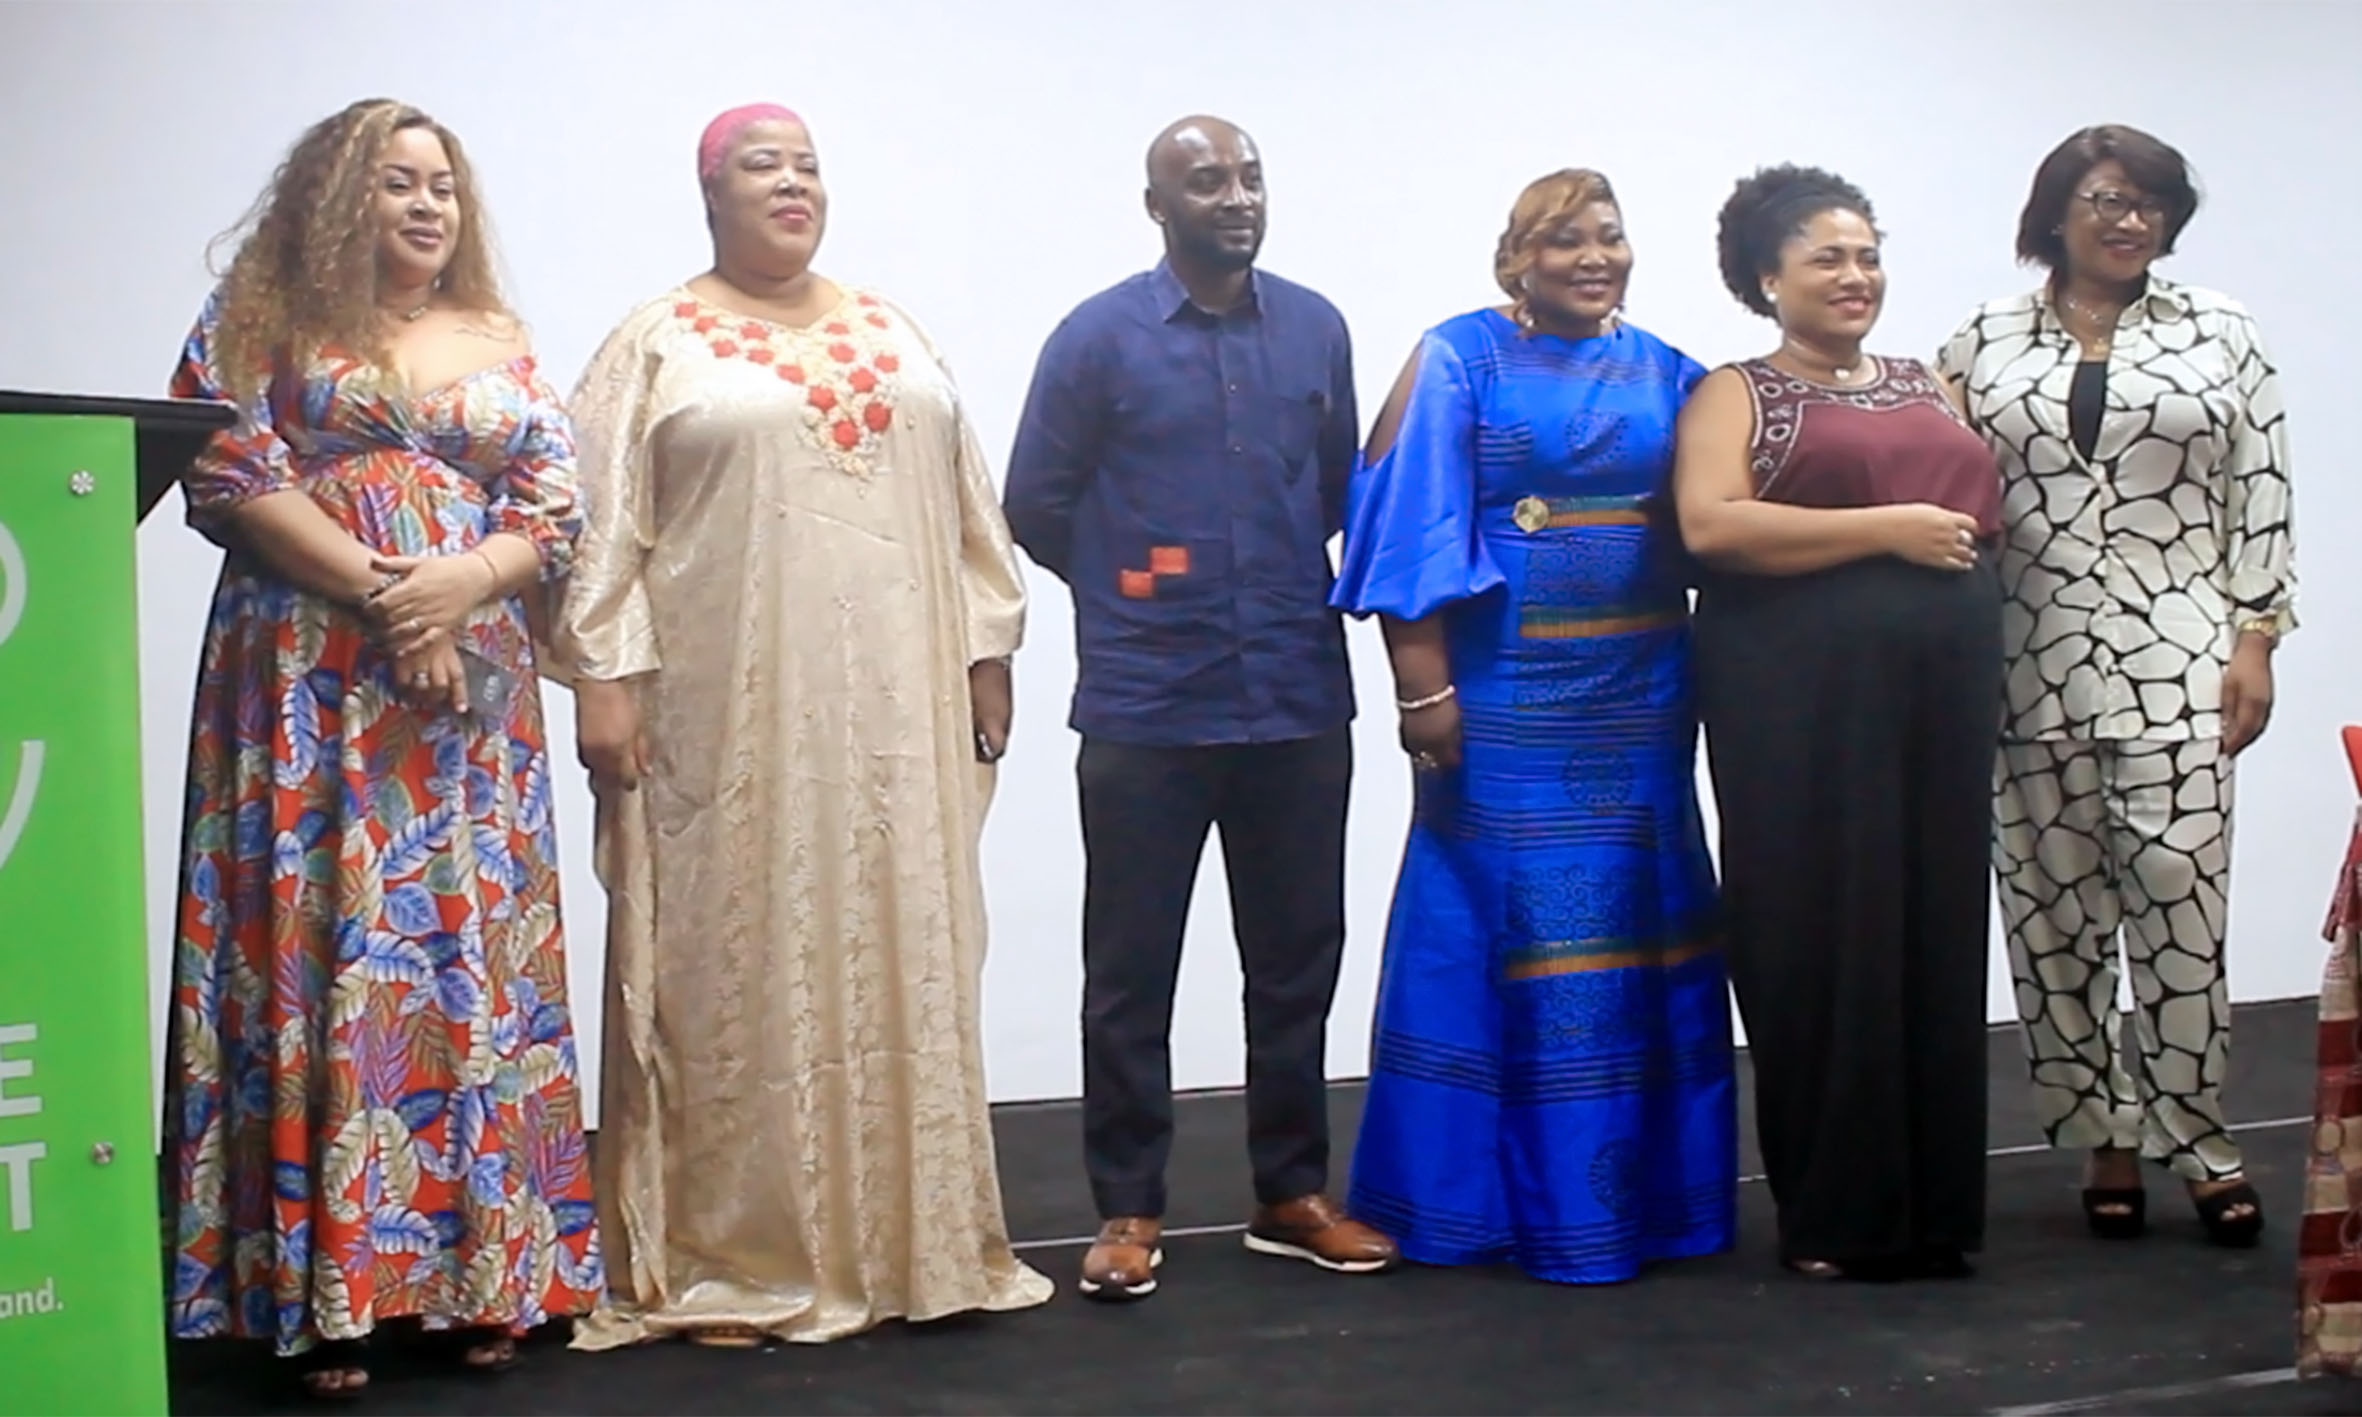 AIFCA : Abidjan, les femmes du cinéma et de l’audiovisuel veulent désormais se faire entendre